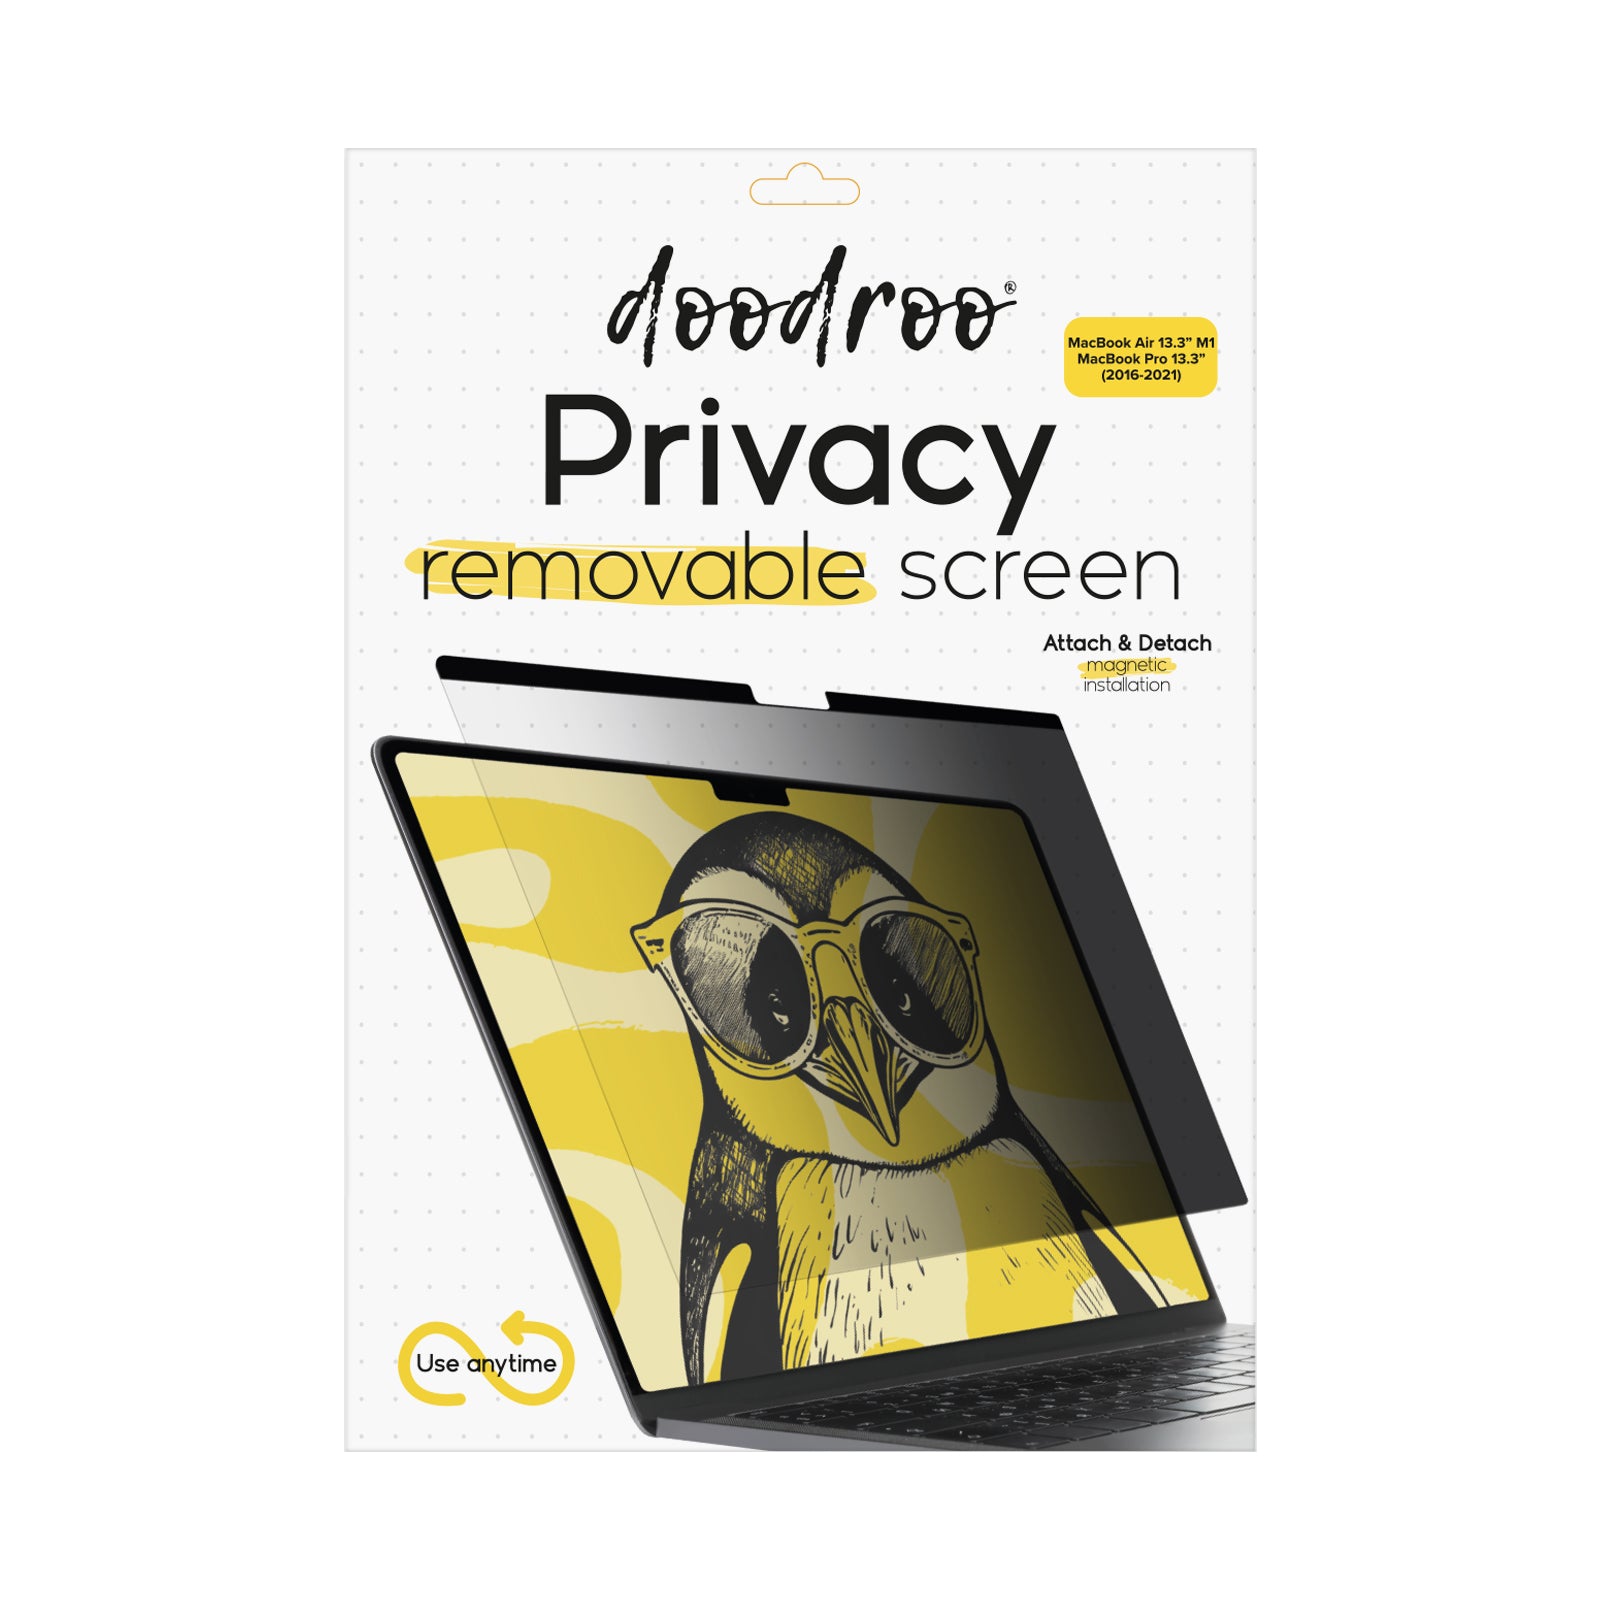 Screen protector rimovibile effetto privacy per MacBook Air 13.3" M1/MacBook Pro 13.3" (2016-2021)